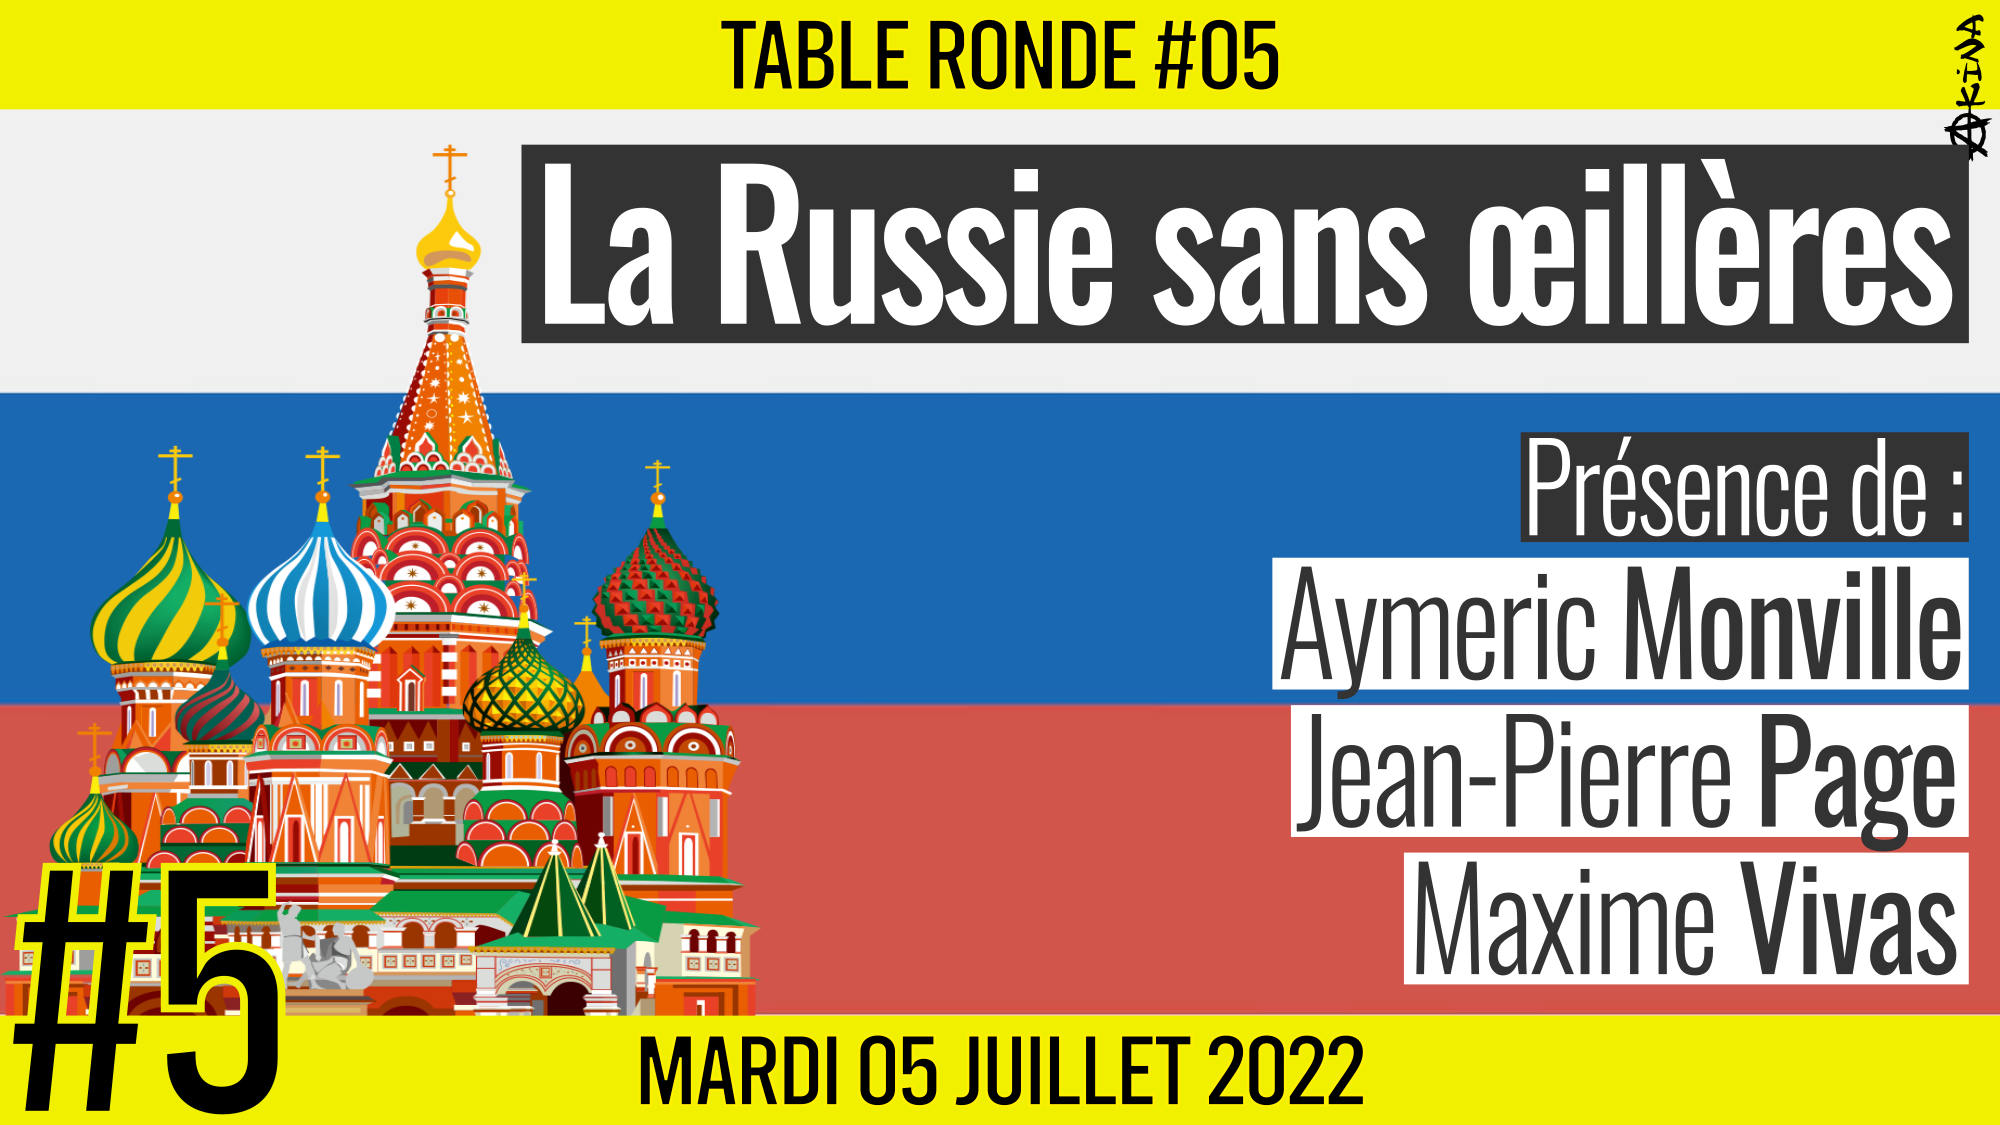 🎡 TABLE RONDE #05 👥 Aymeric Monville, Jean-Pierre Page et Maxime Vivas 🎯 La Russie sans œillères 📆 05-07-2022